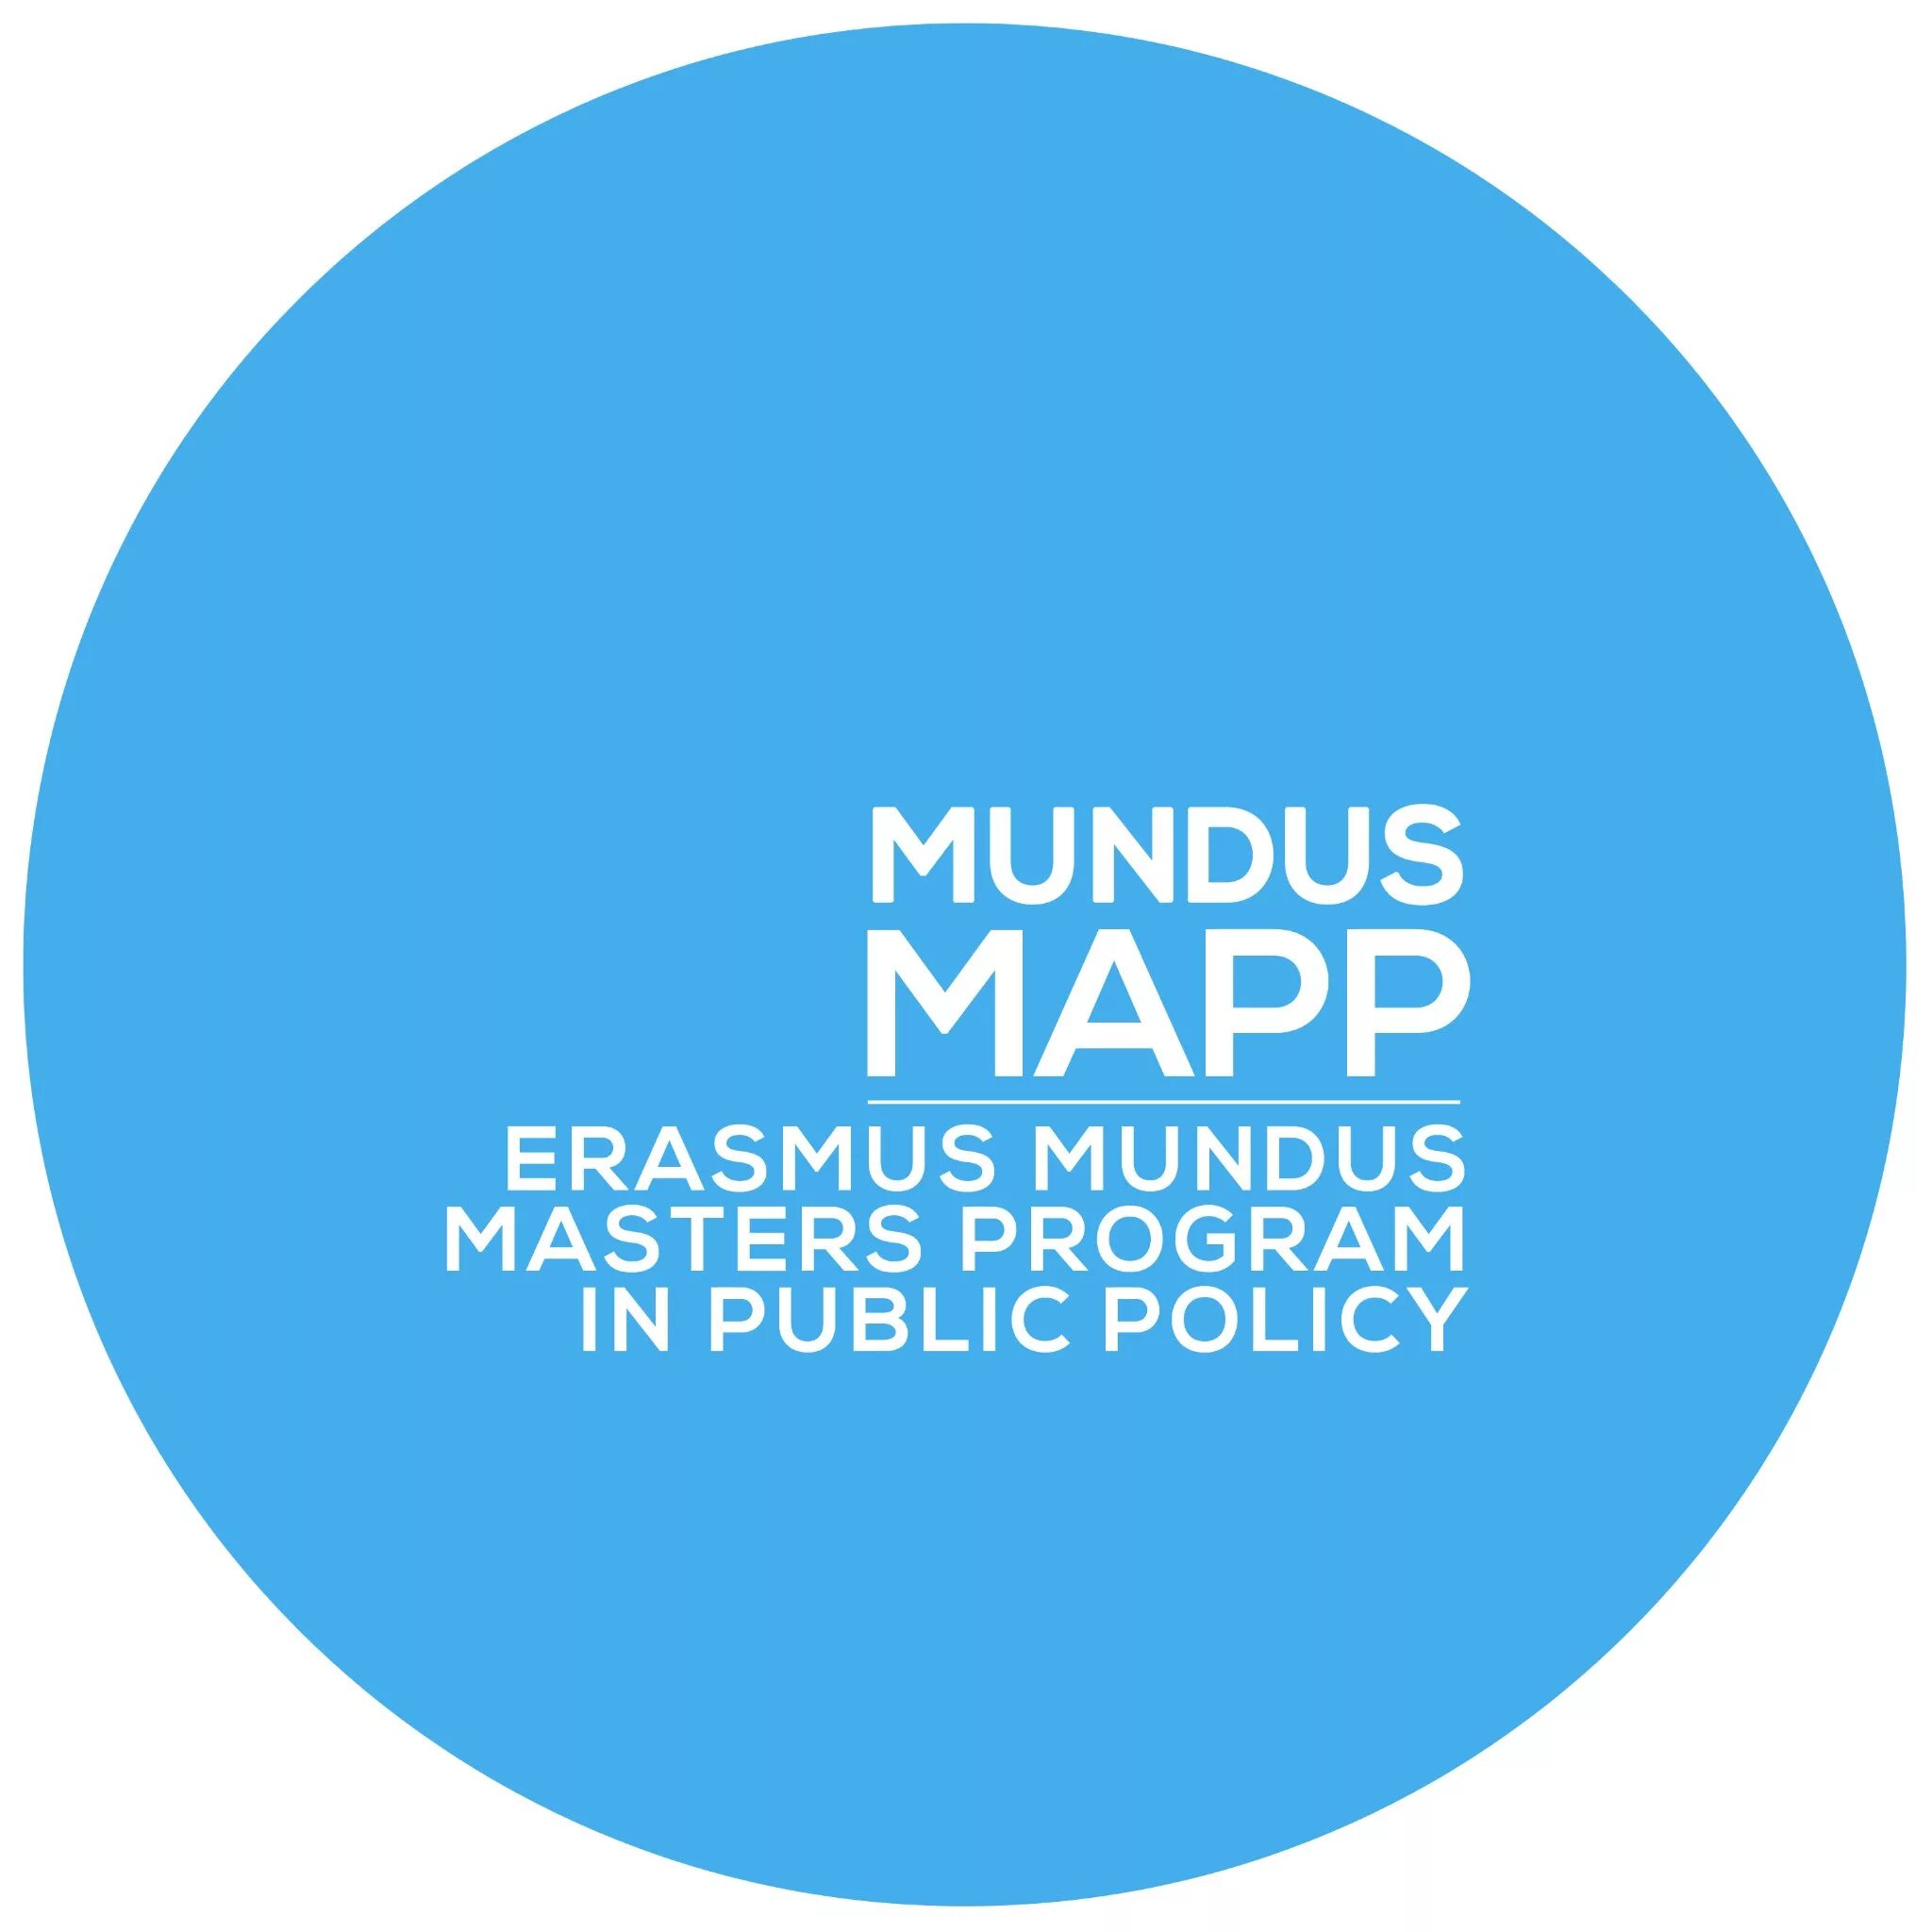 Master programme. Erasmus Mundus логотип. Join Erasmus Mundus programmes. Эразмус Мундус в области общественного здравоохранения лого. Statement of purpose for Erasmus Mundus.